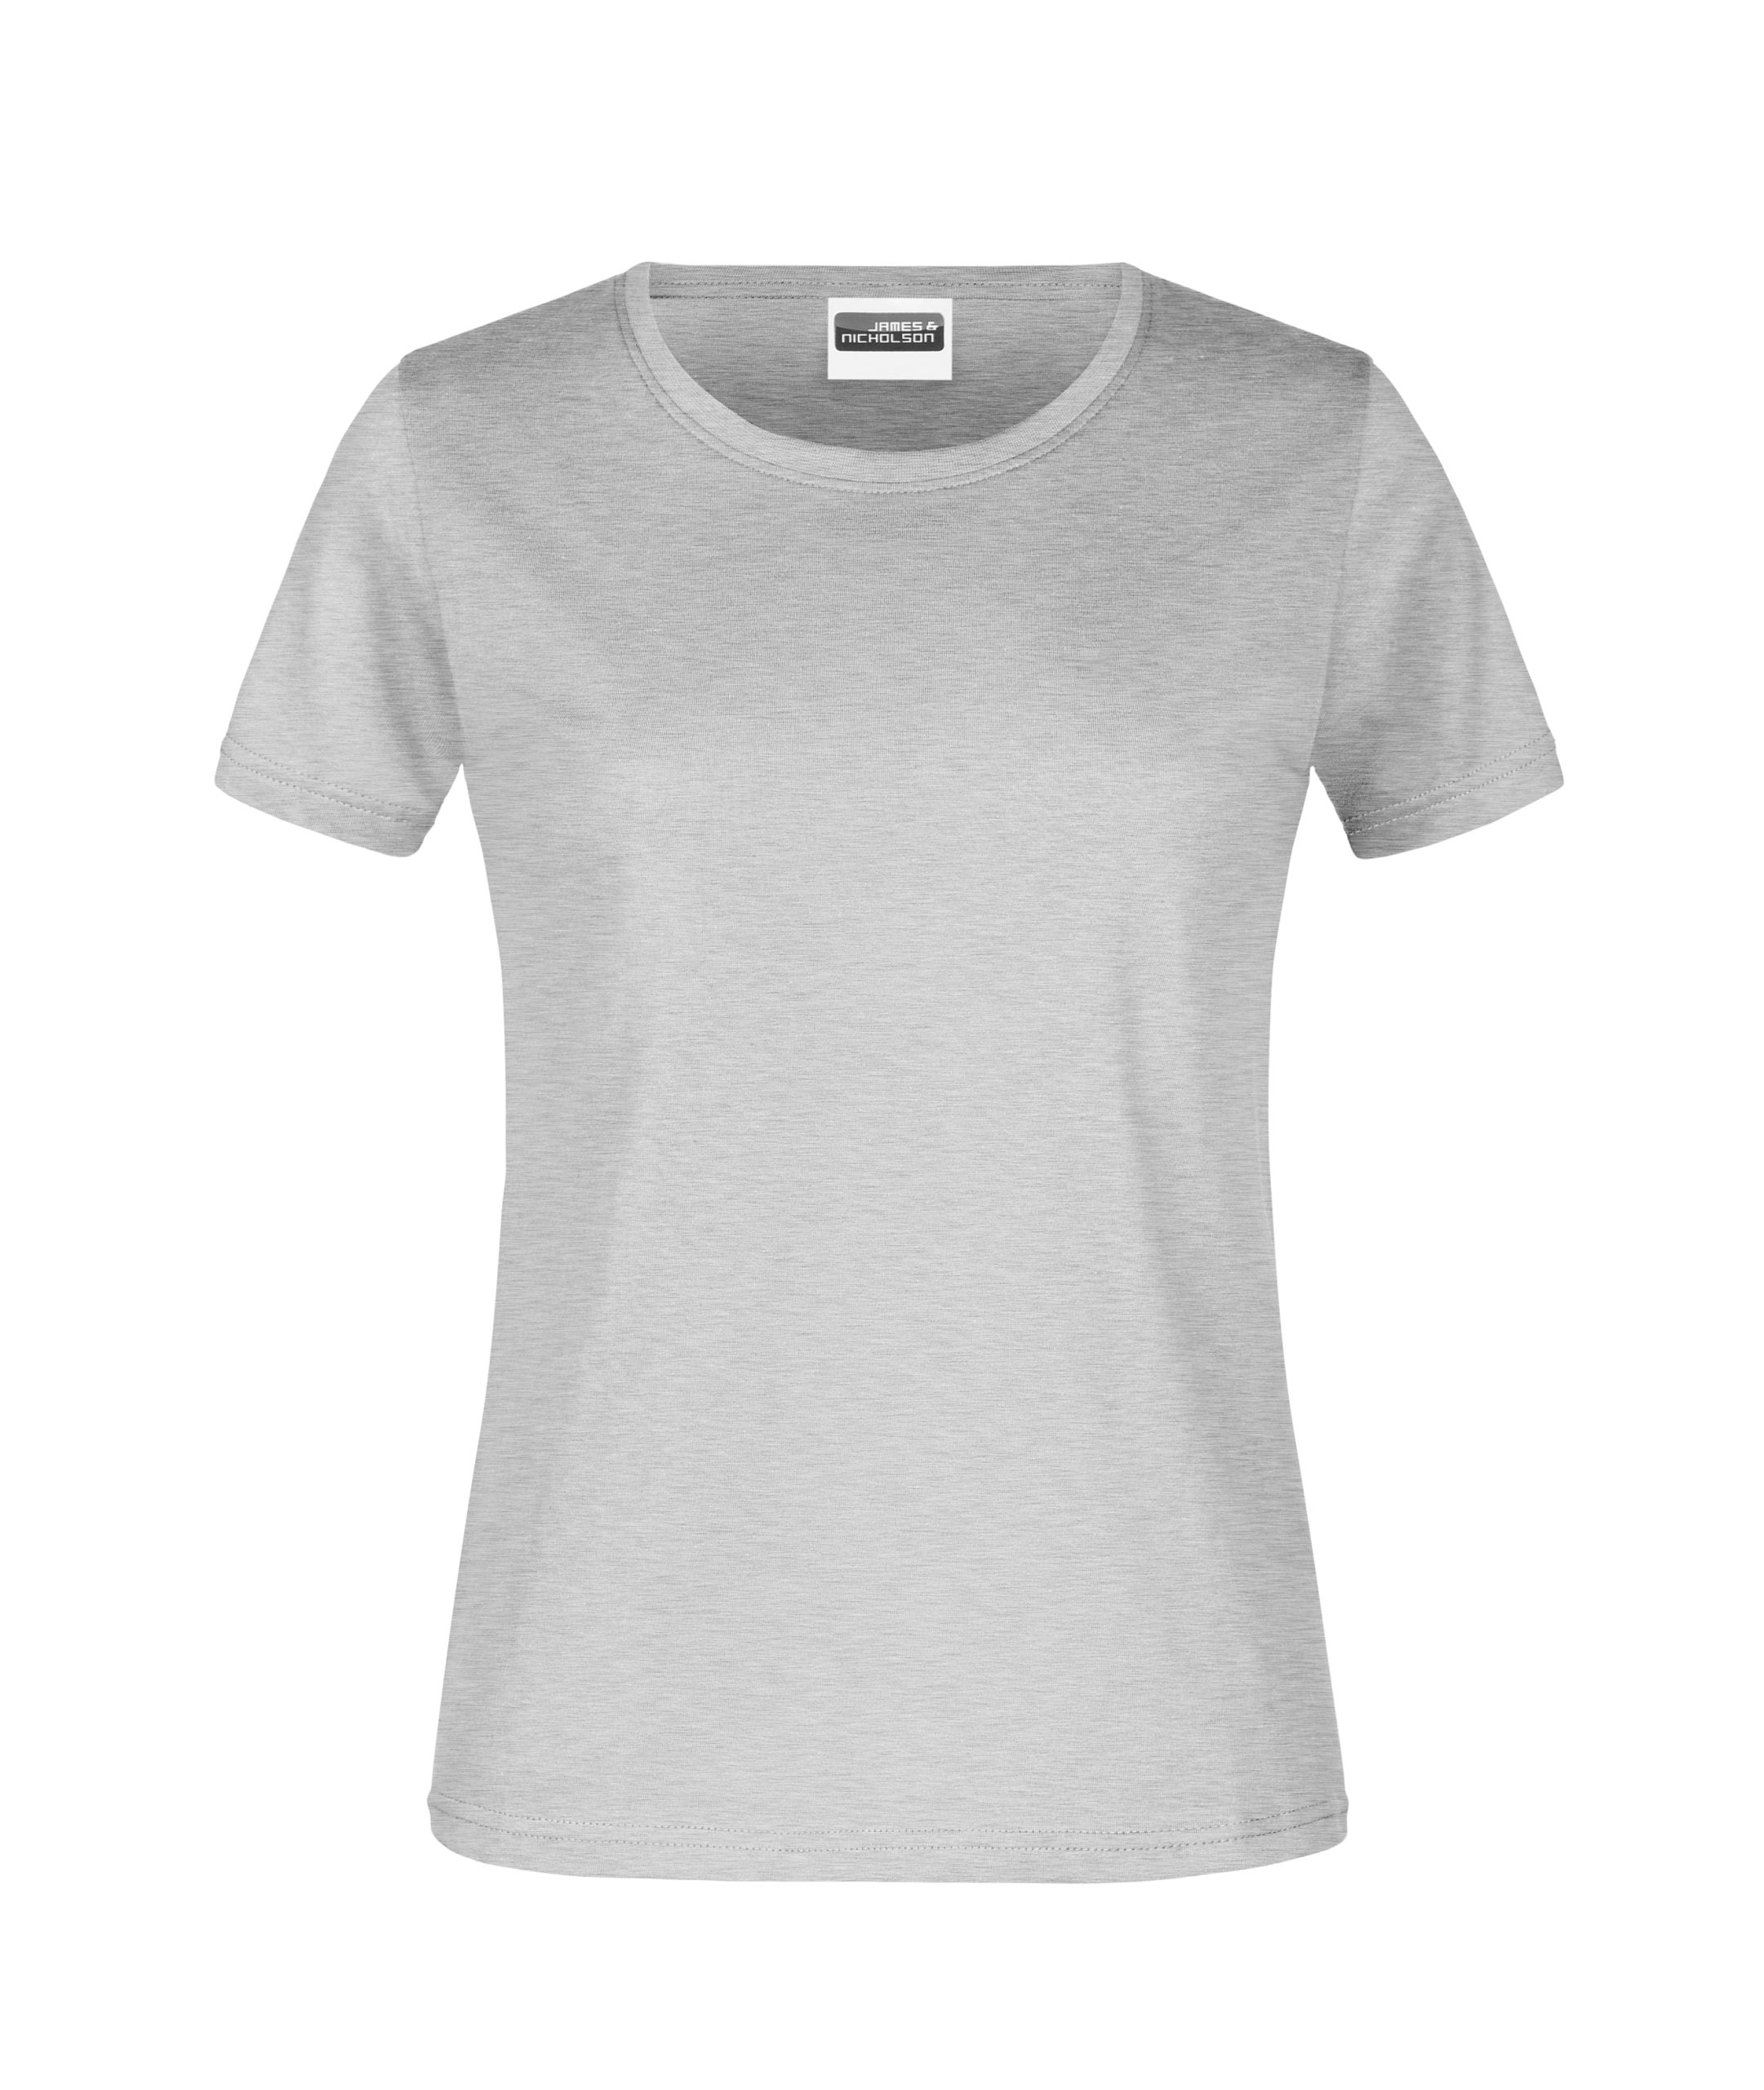 T-Shirt Lady heather grey Bestens 180 - gr Beworben